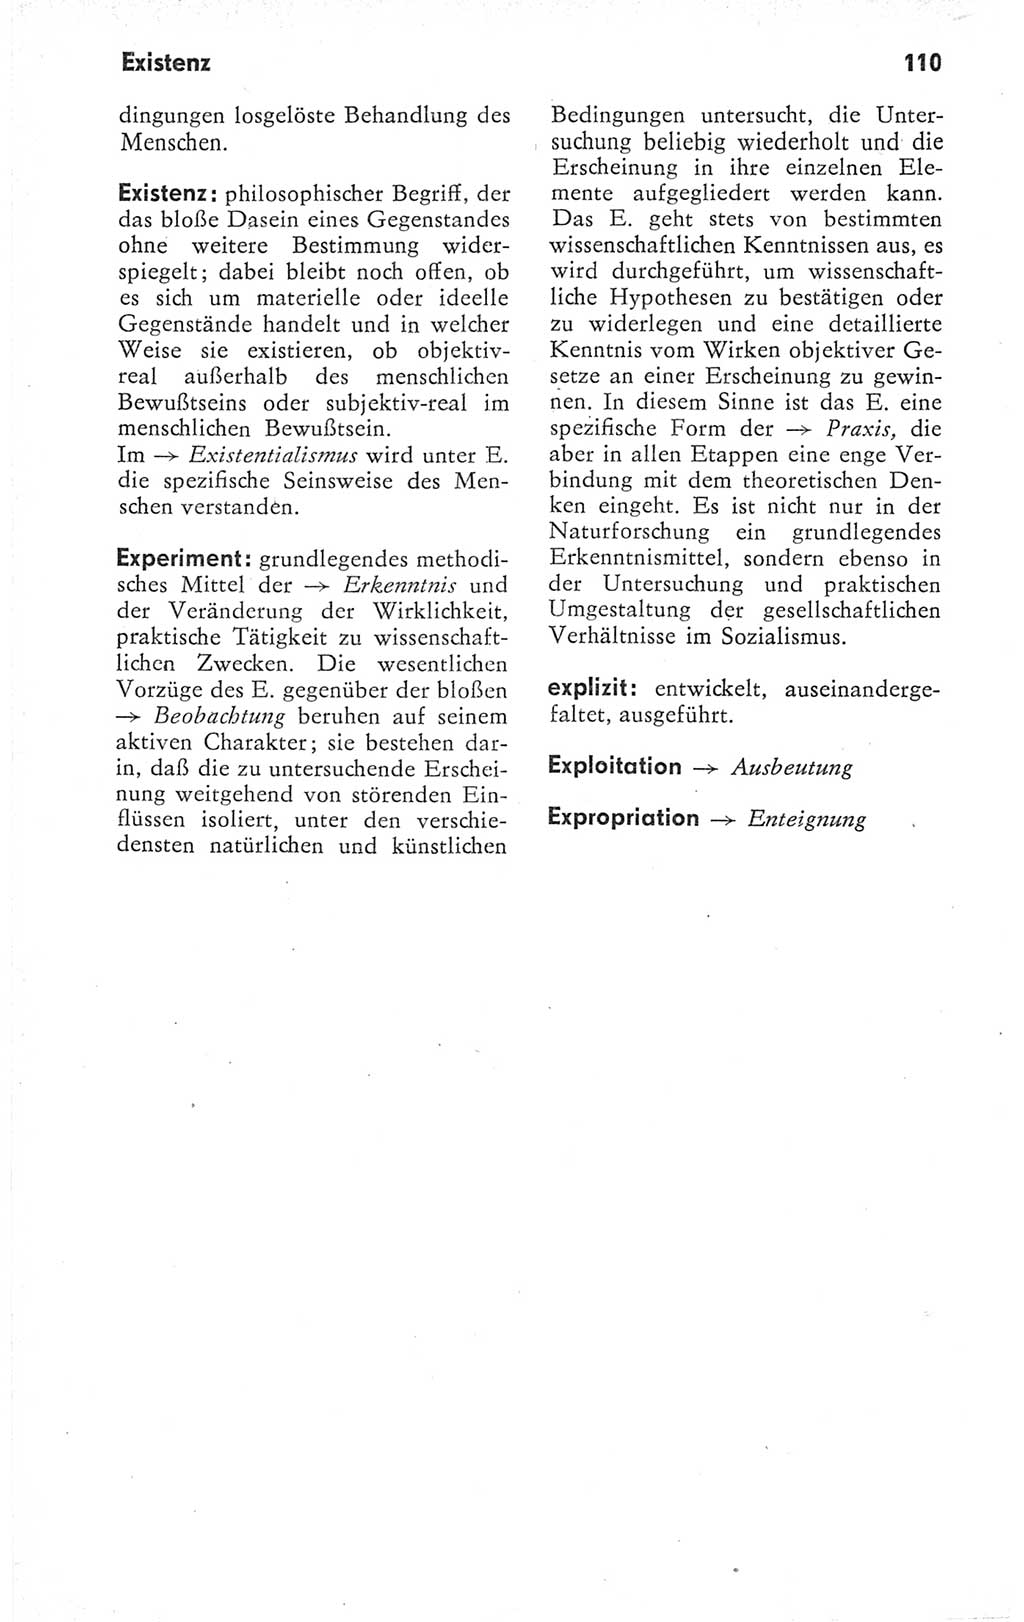 Kleines Wörterbuch der marxistisch-leninistischen Philosophie [Deutsche Demokratische Republik (DDR)] 1979, Seite 110 (Kl. Wb. ML Phil. DDR 1979, S. 110)